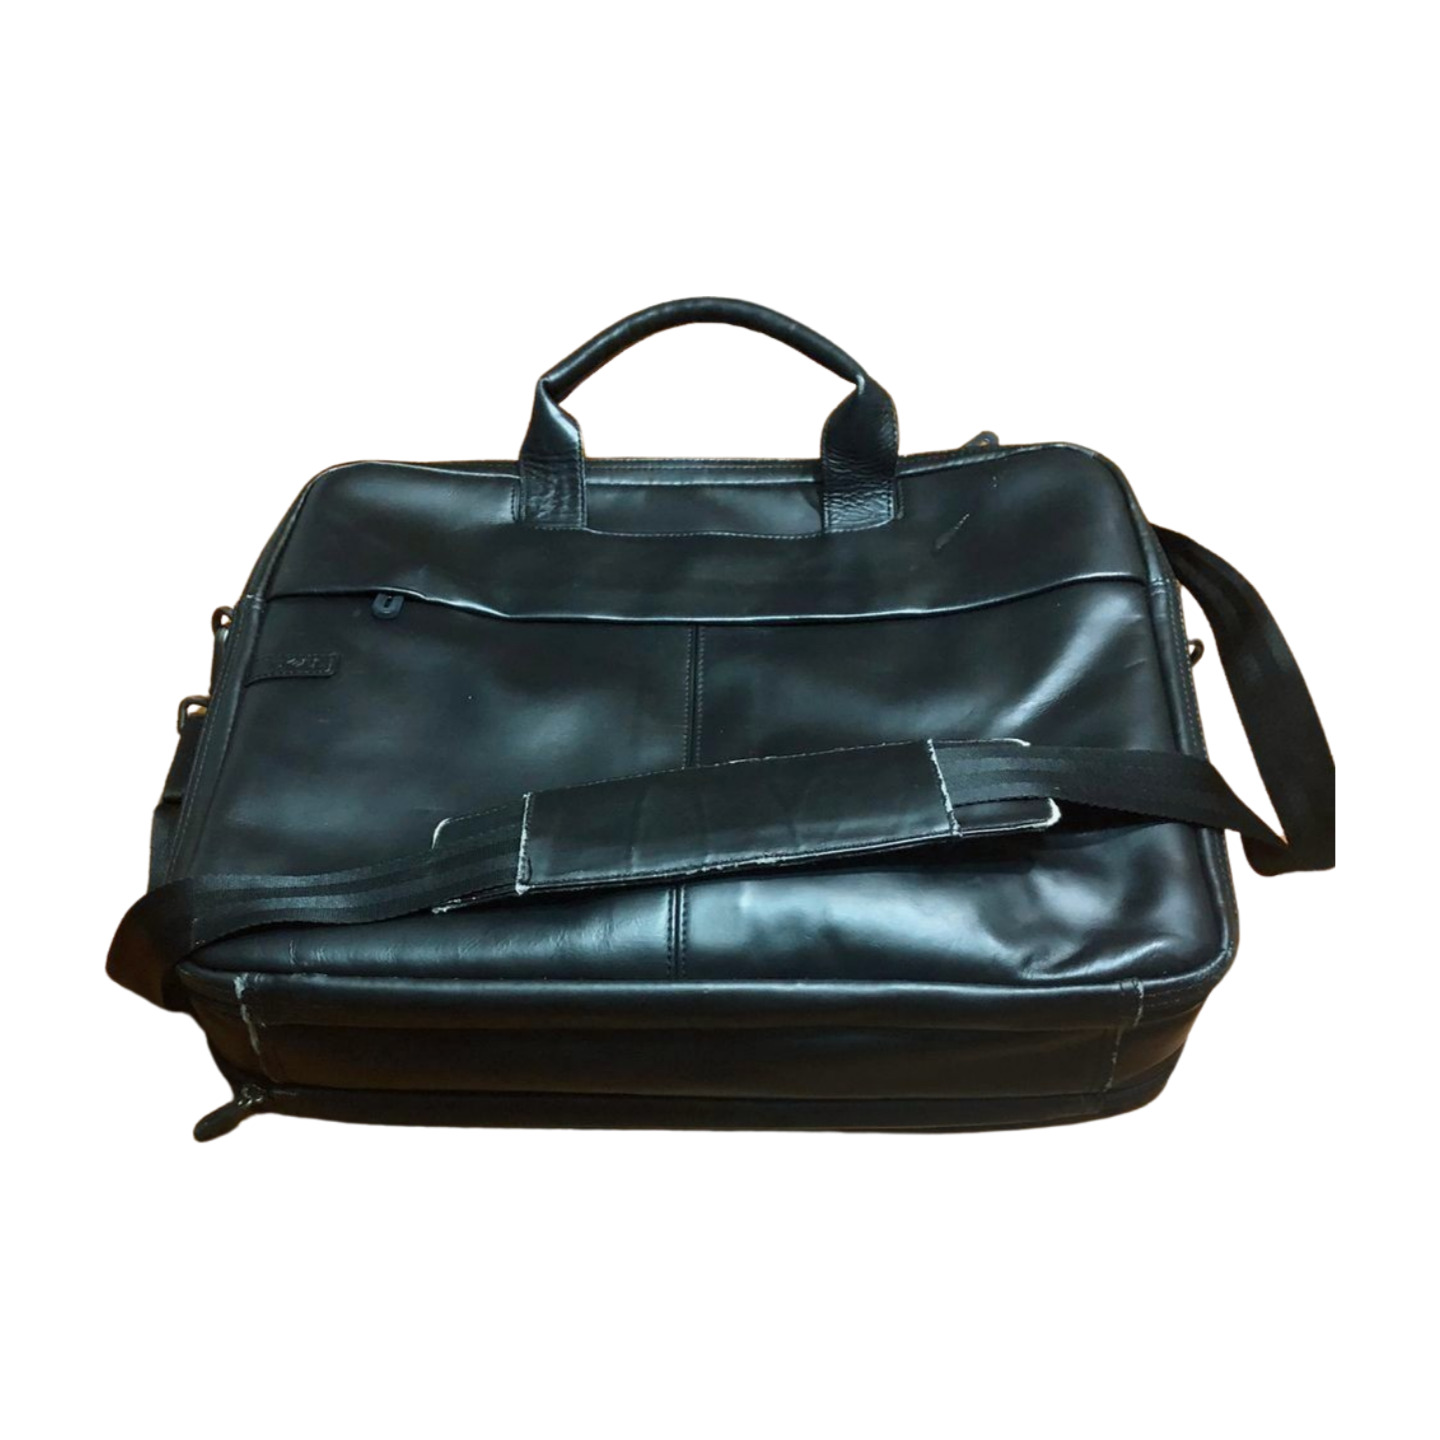 Dell Leather Laptop Bag Deluxe Briefcase Messenger Bag Black Shoulder